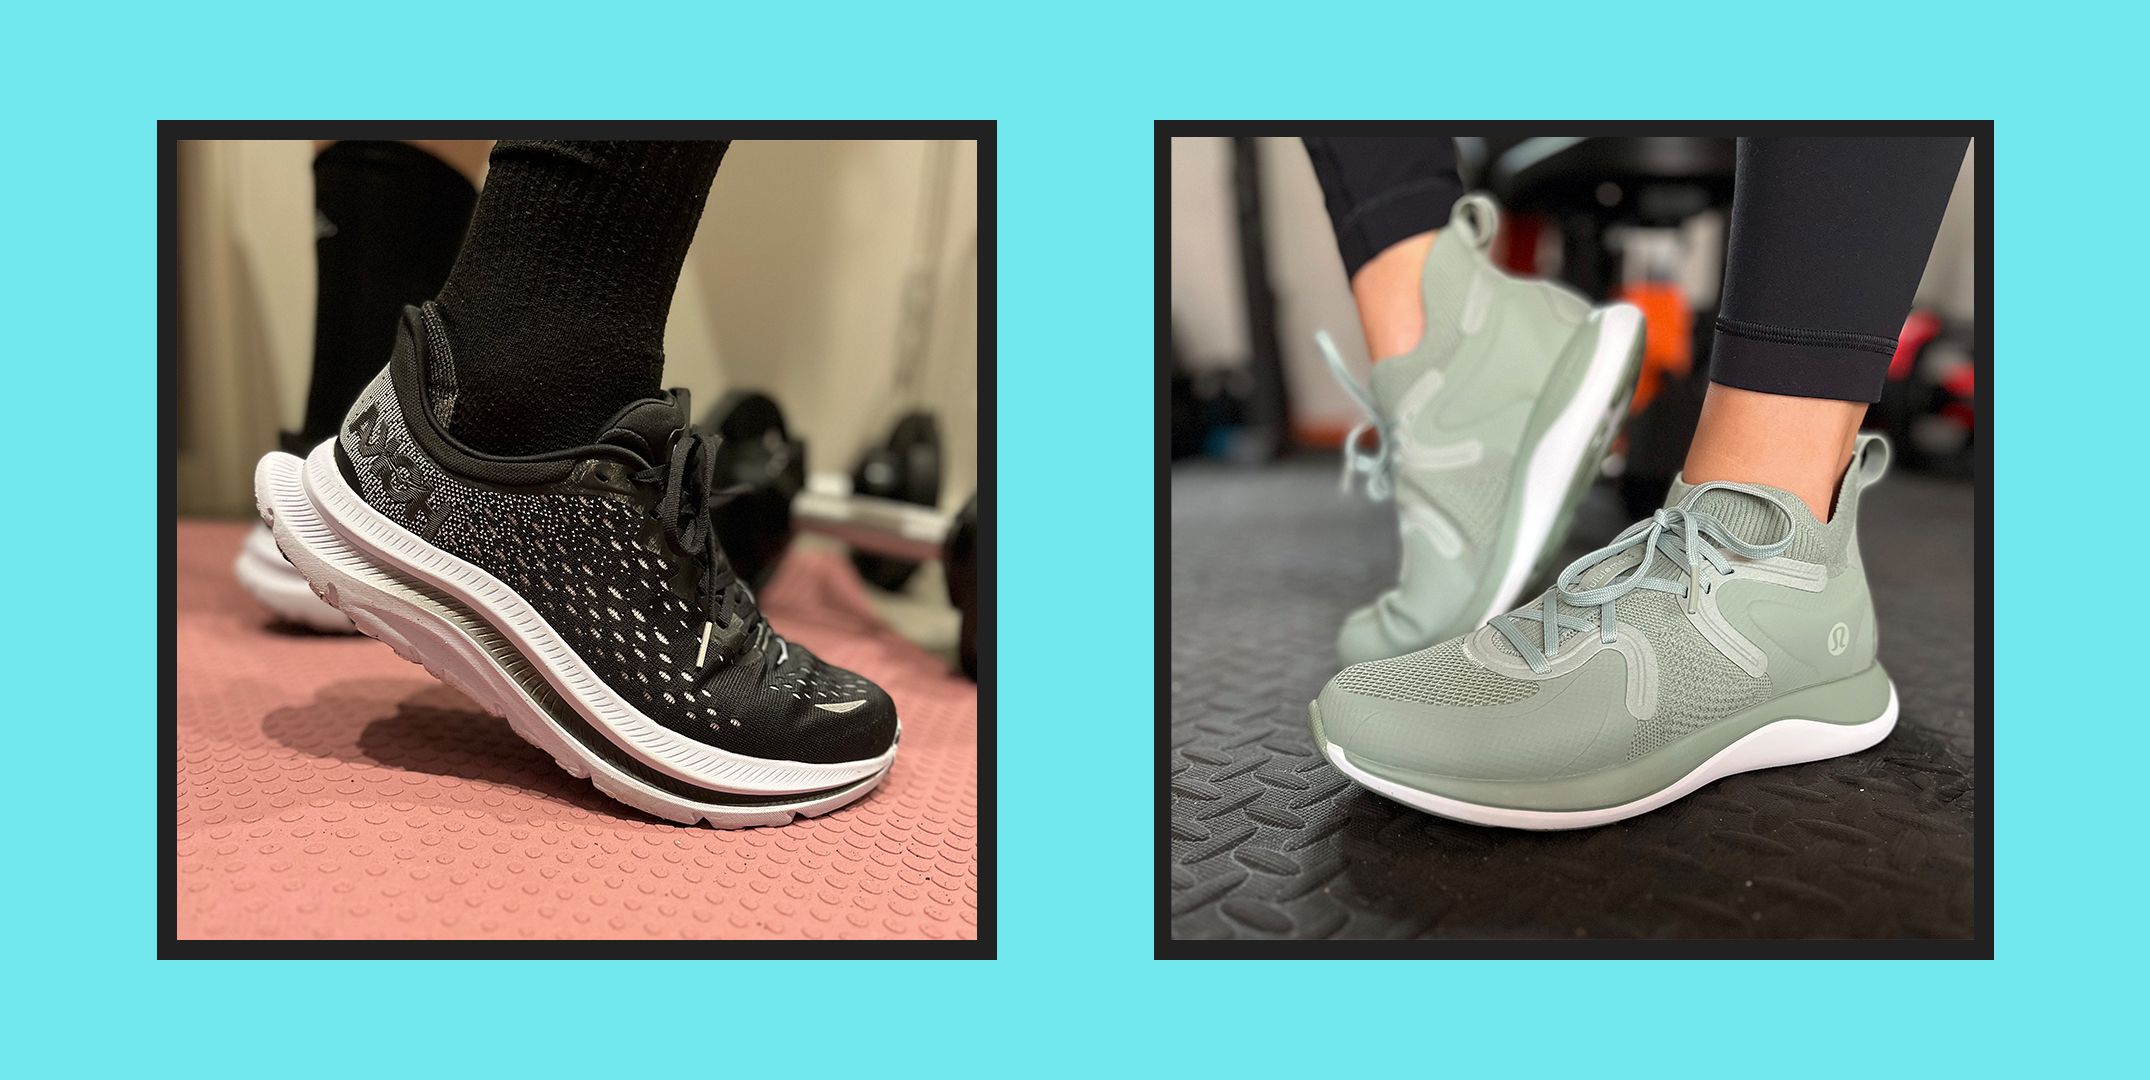 Best Gym Shoes: Nike Metcon vs Reebok Nano